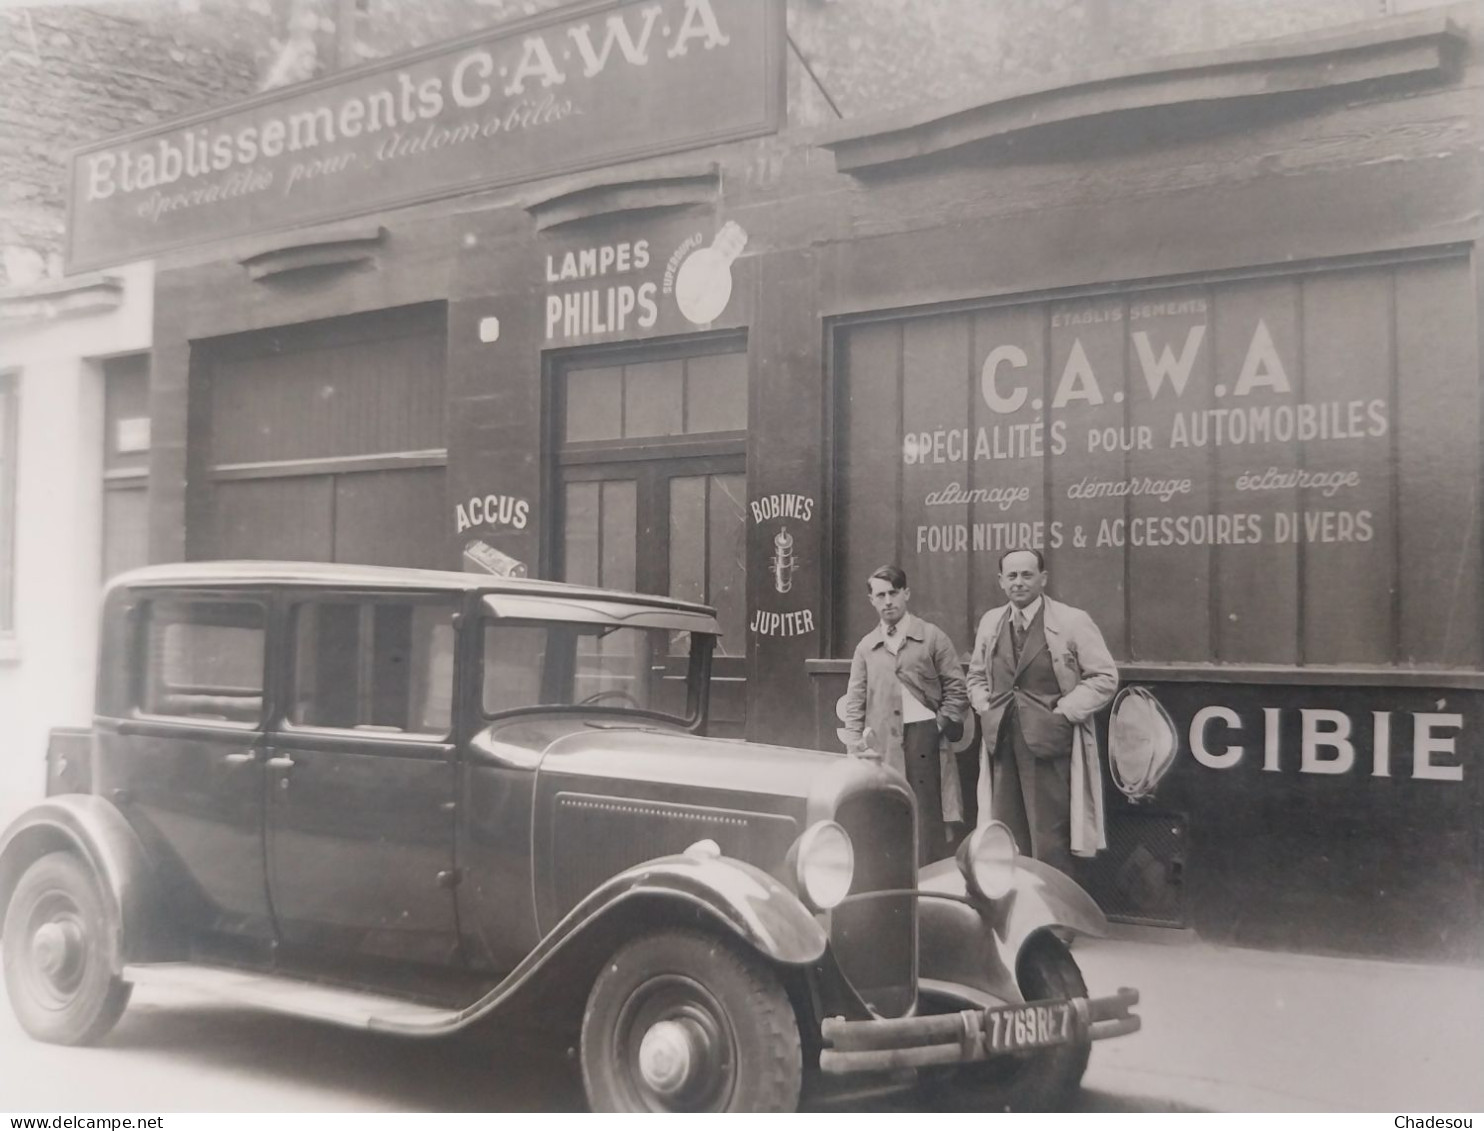 Citroën établissement C.A.W.A Automobile Cars - Collections & Lots